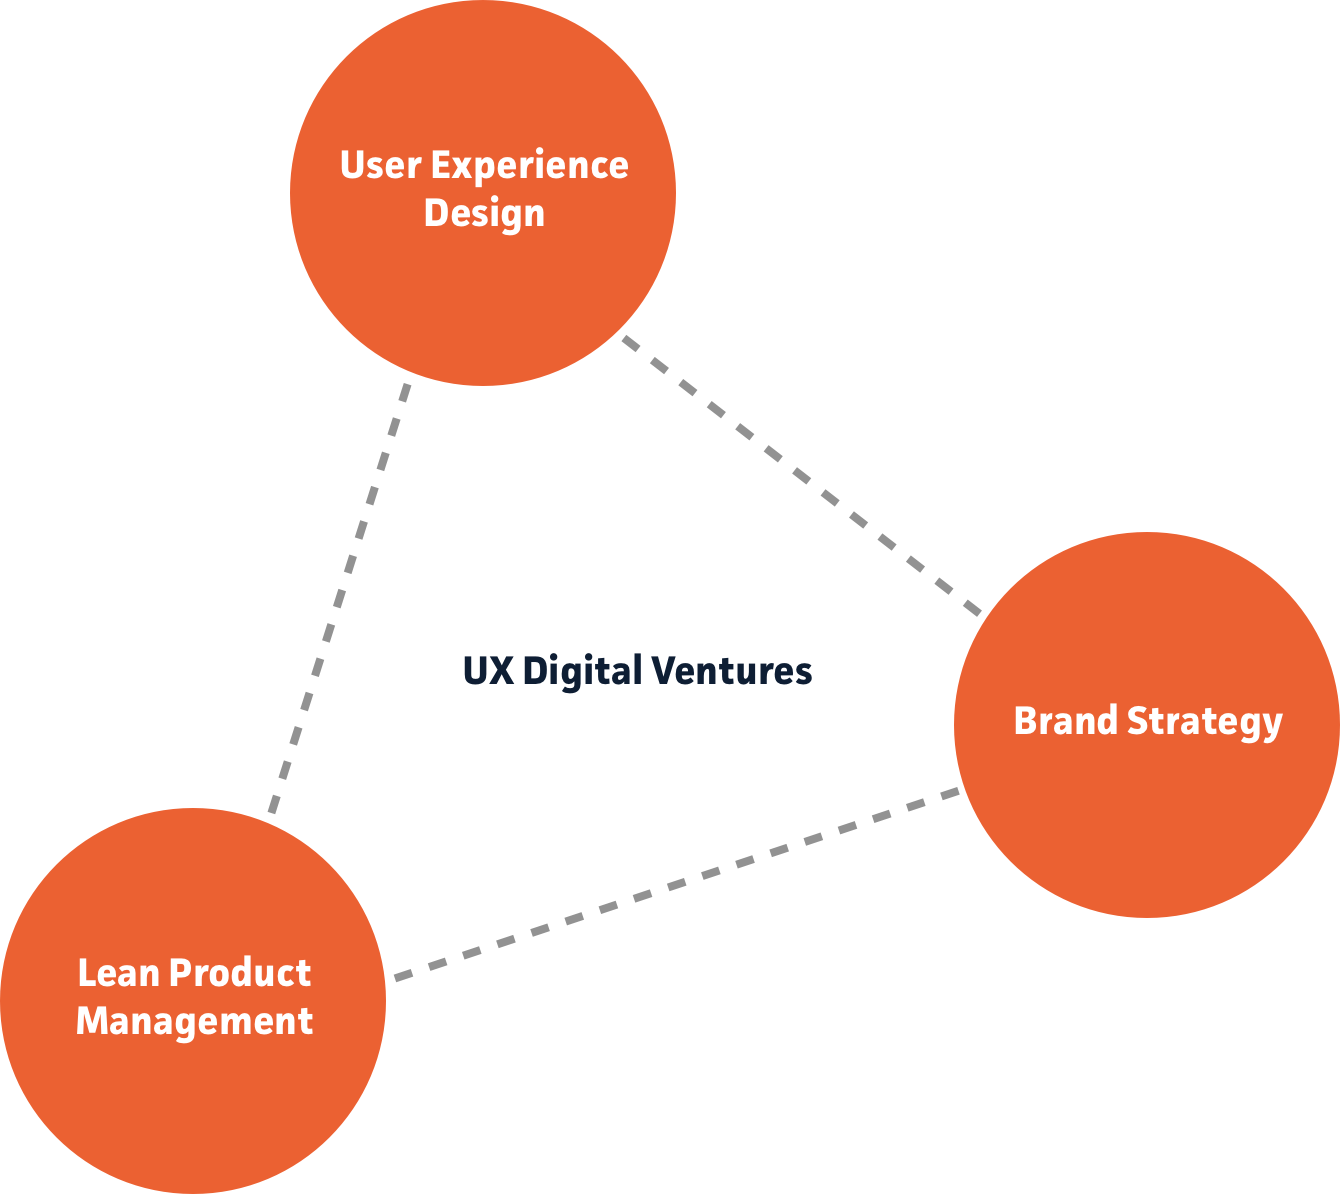 UX Digital Ventures - Die Kombination aus UX Design, Brand Strategy und Lean Product Management